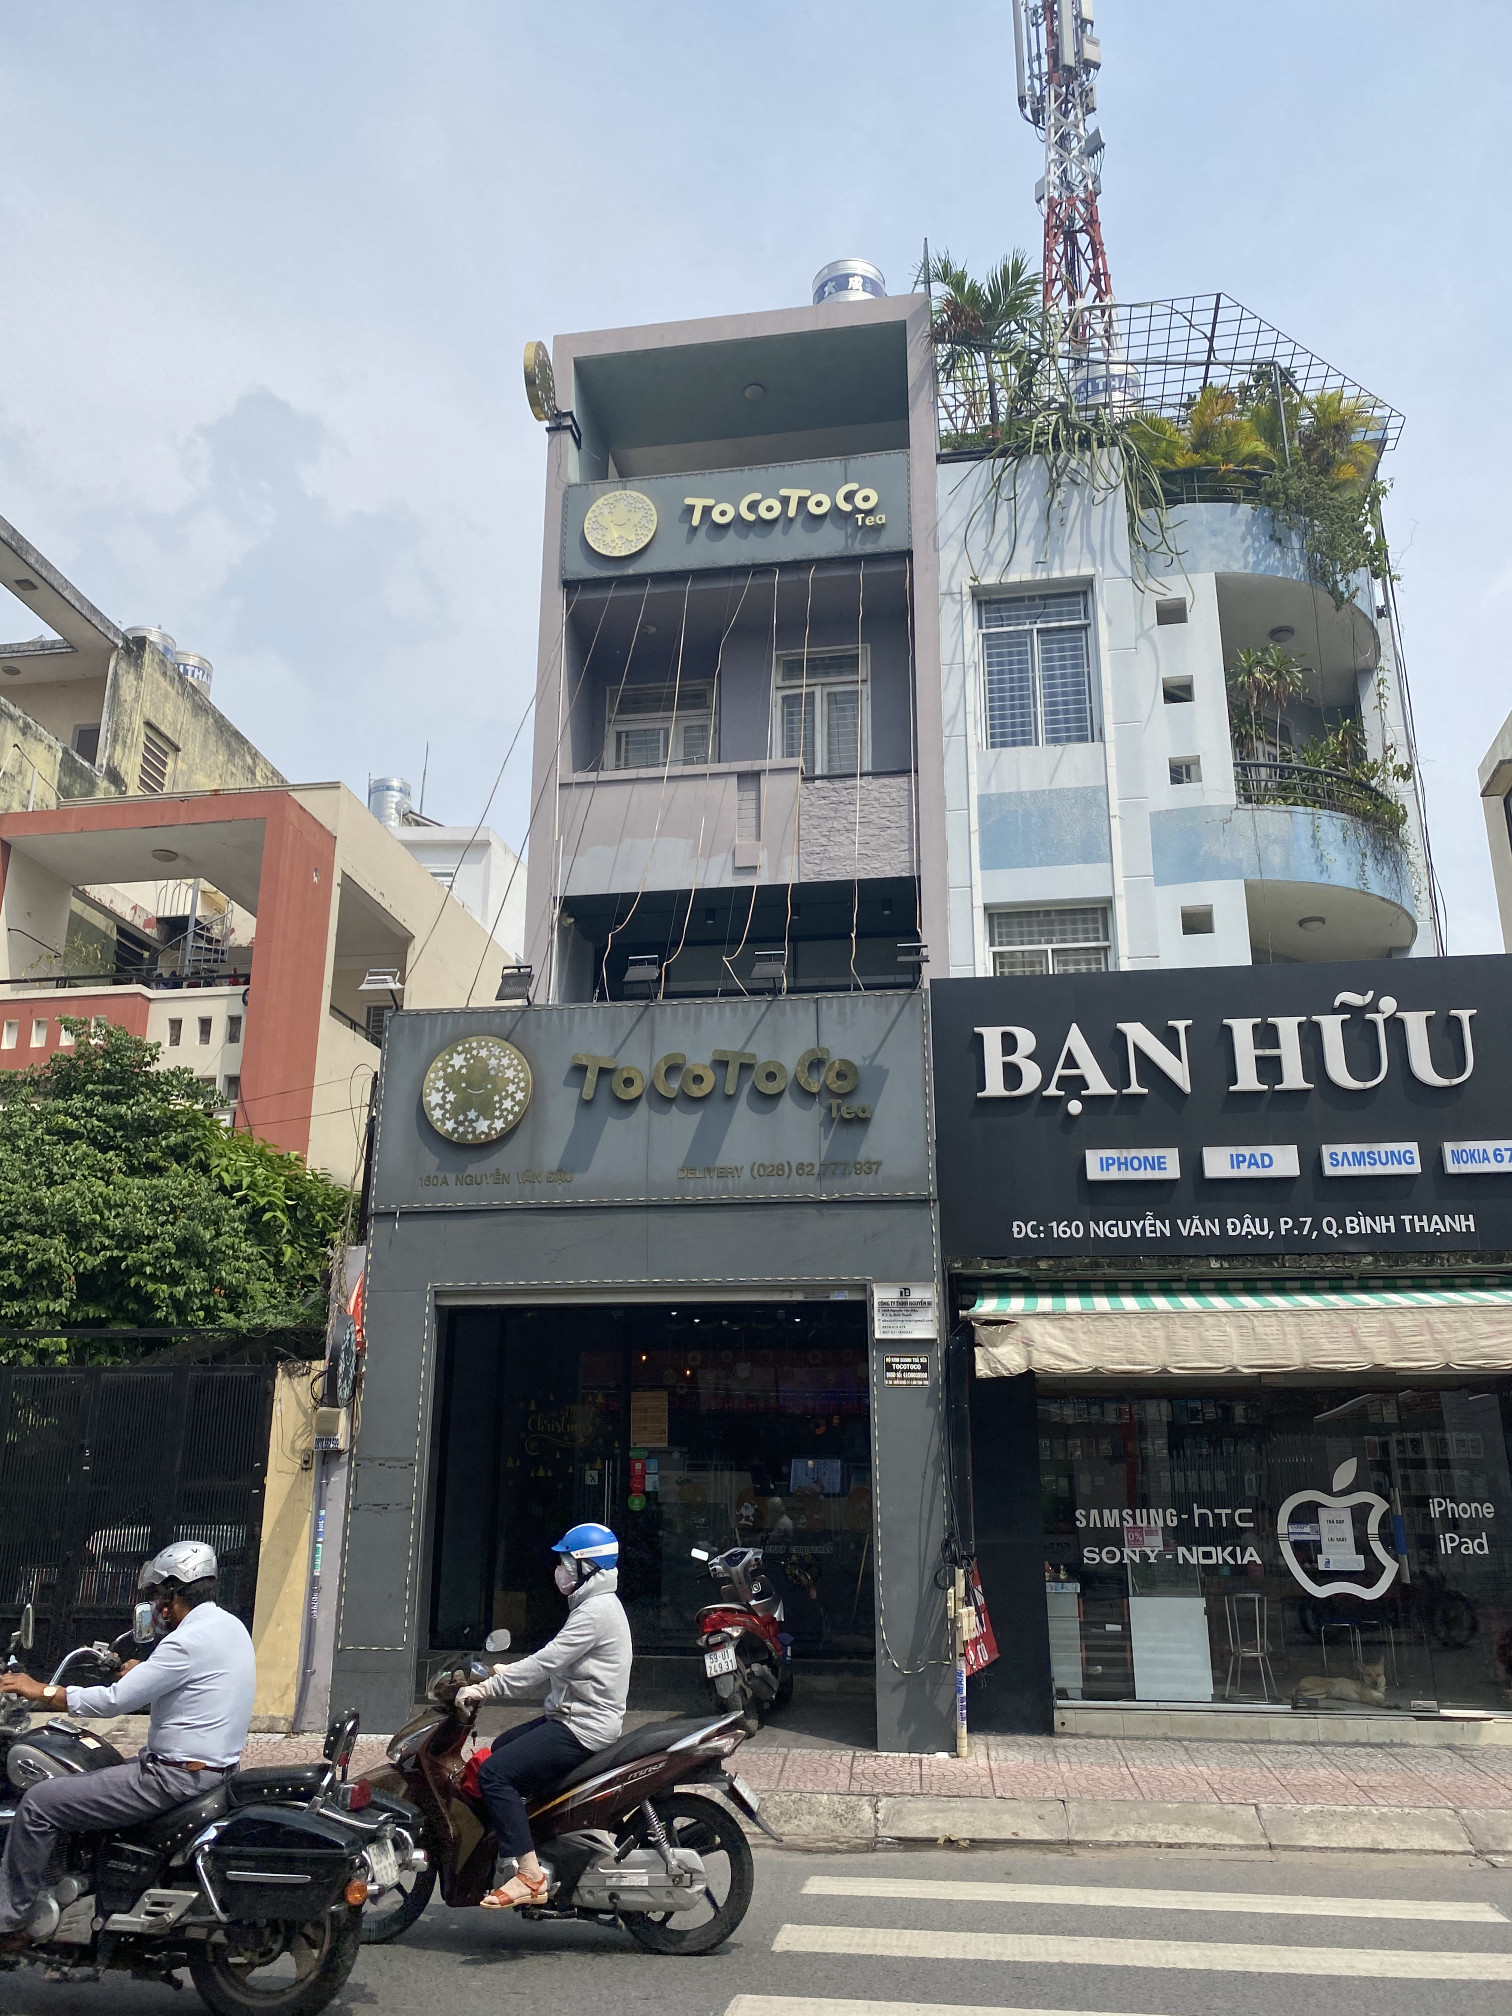 Mặt tiền kinh doanh Nguyễn văn Đậu cho khách đầu tư giữ tiền chỉ 9.5 tỷ